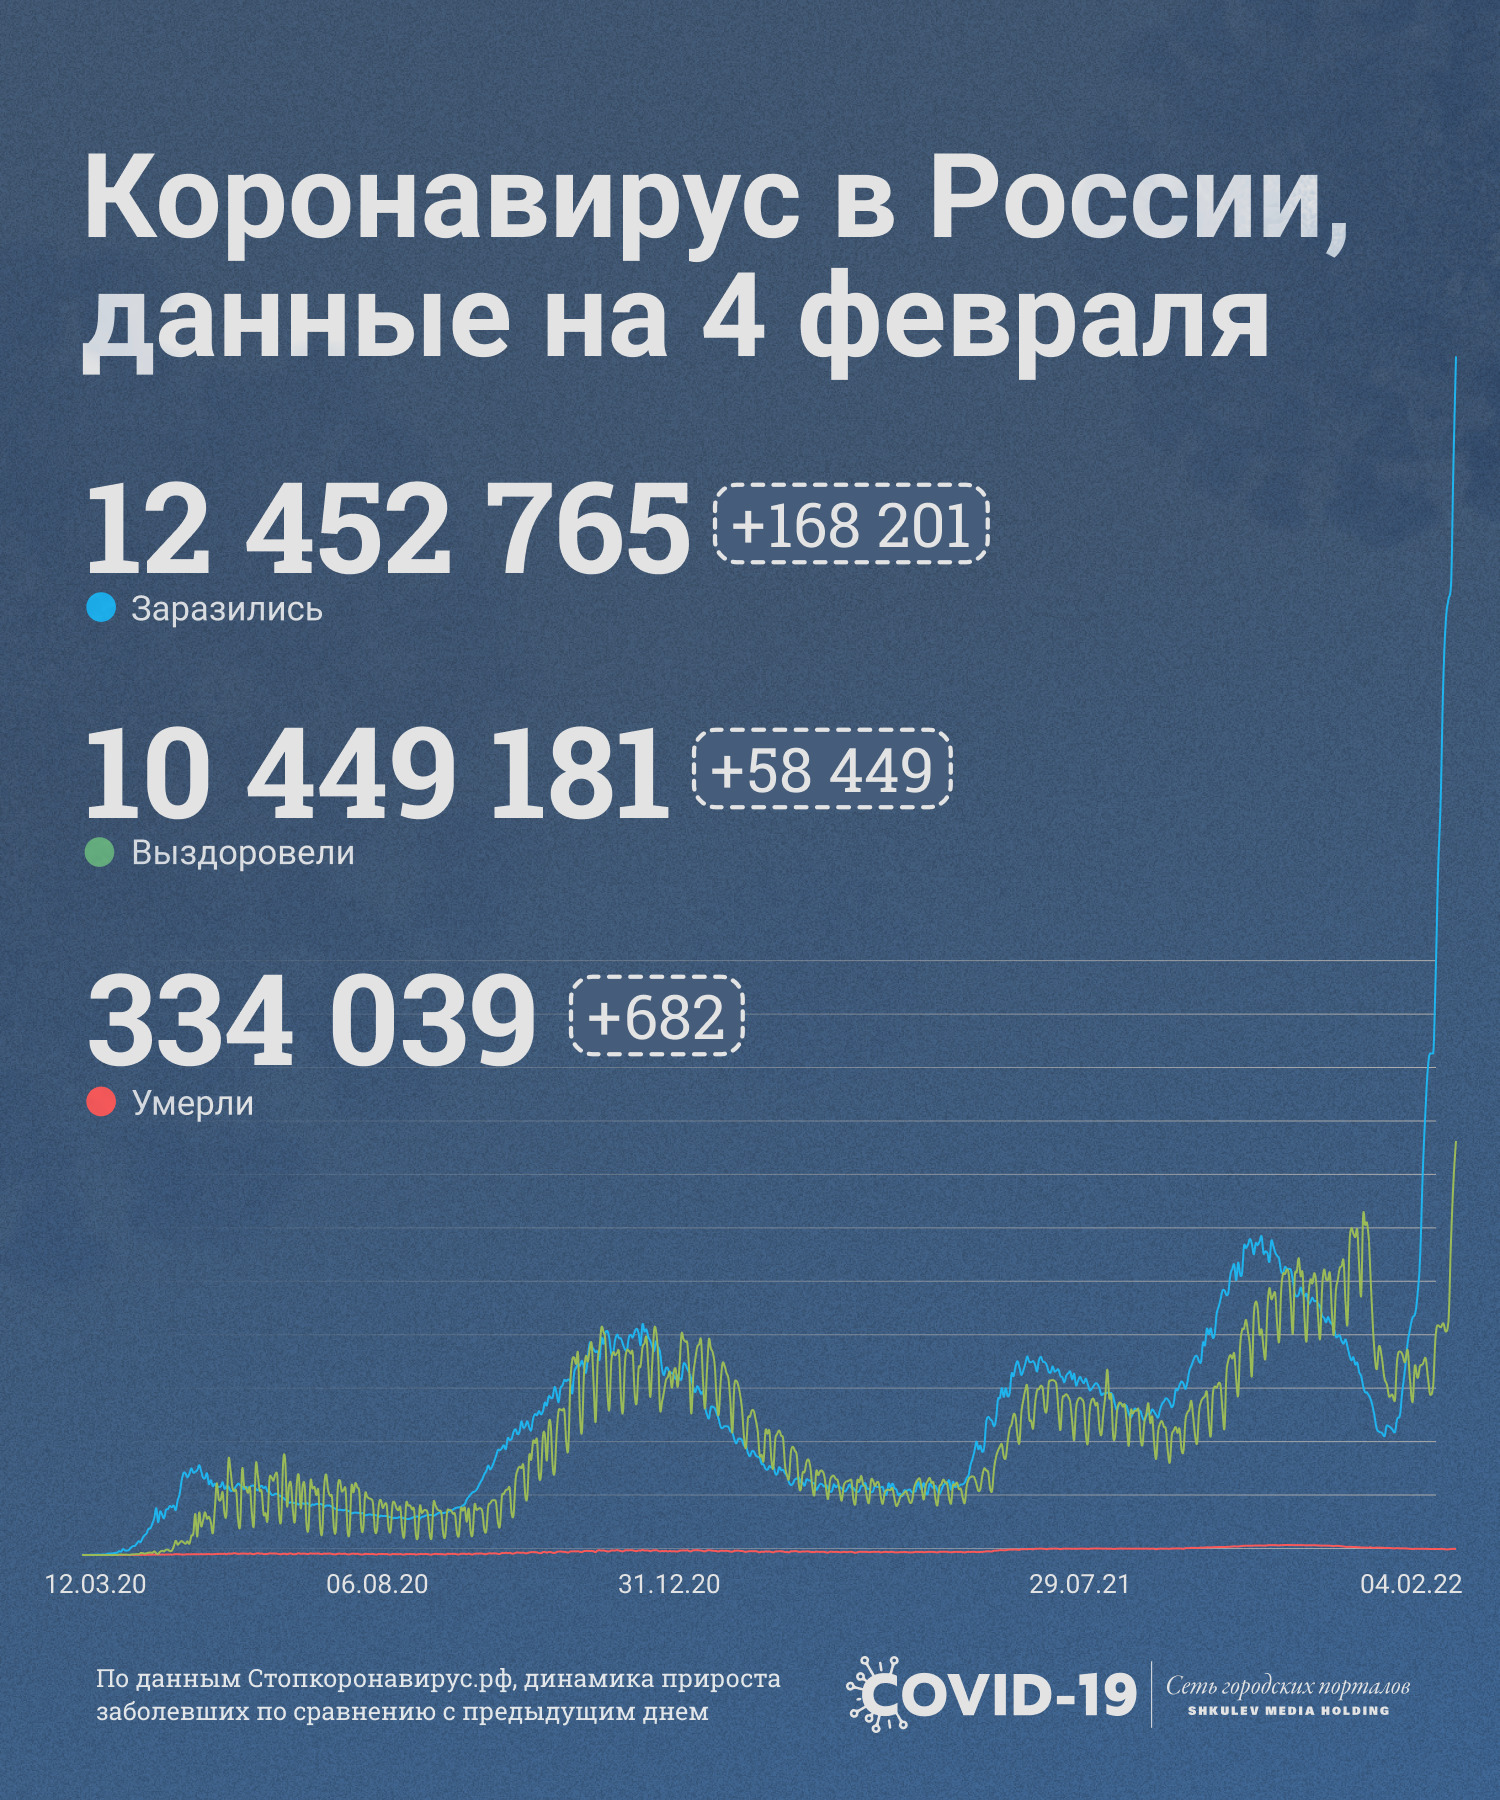 Статистика по коронавирусу в России на сегодняшний день выглядит так